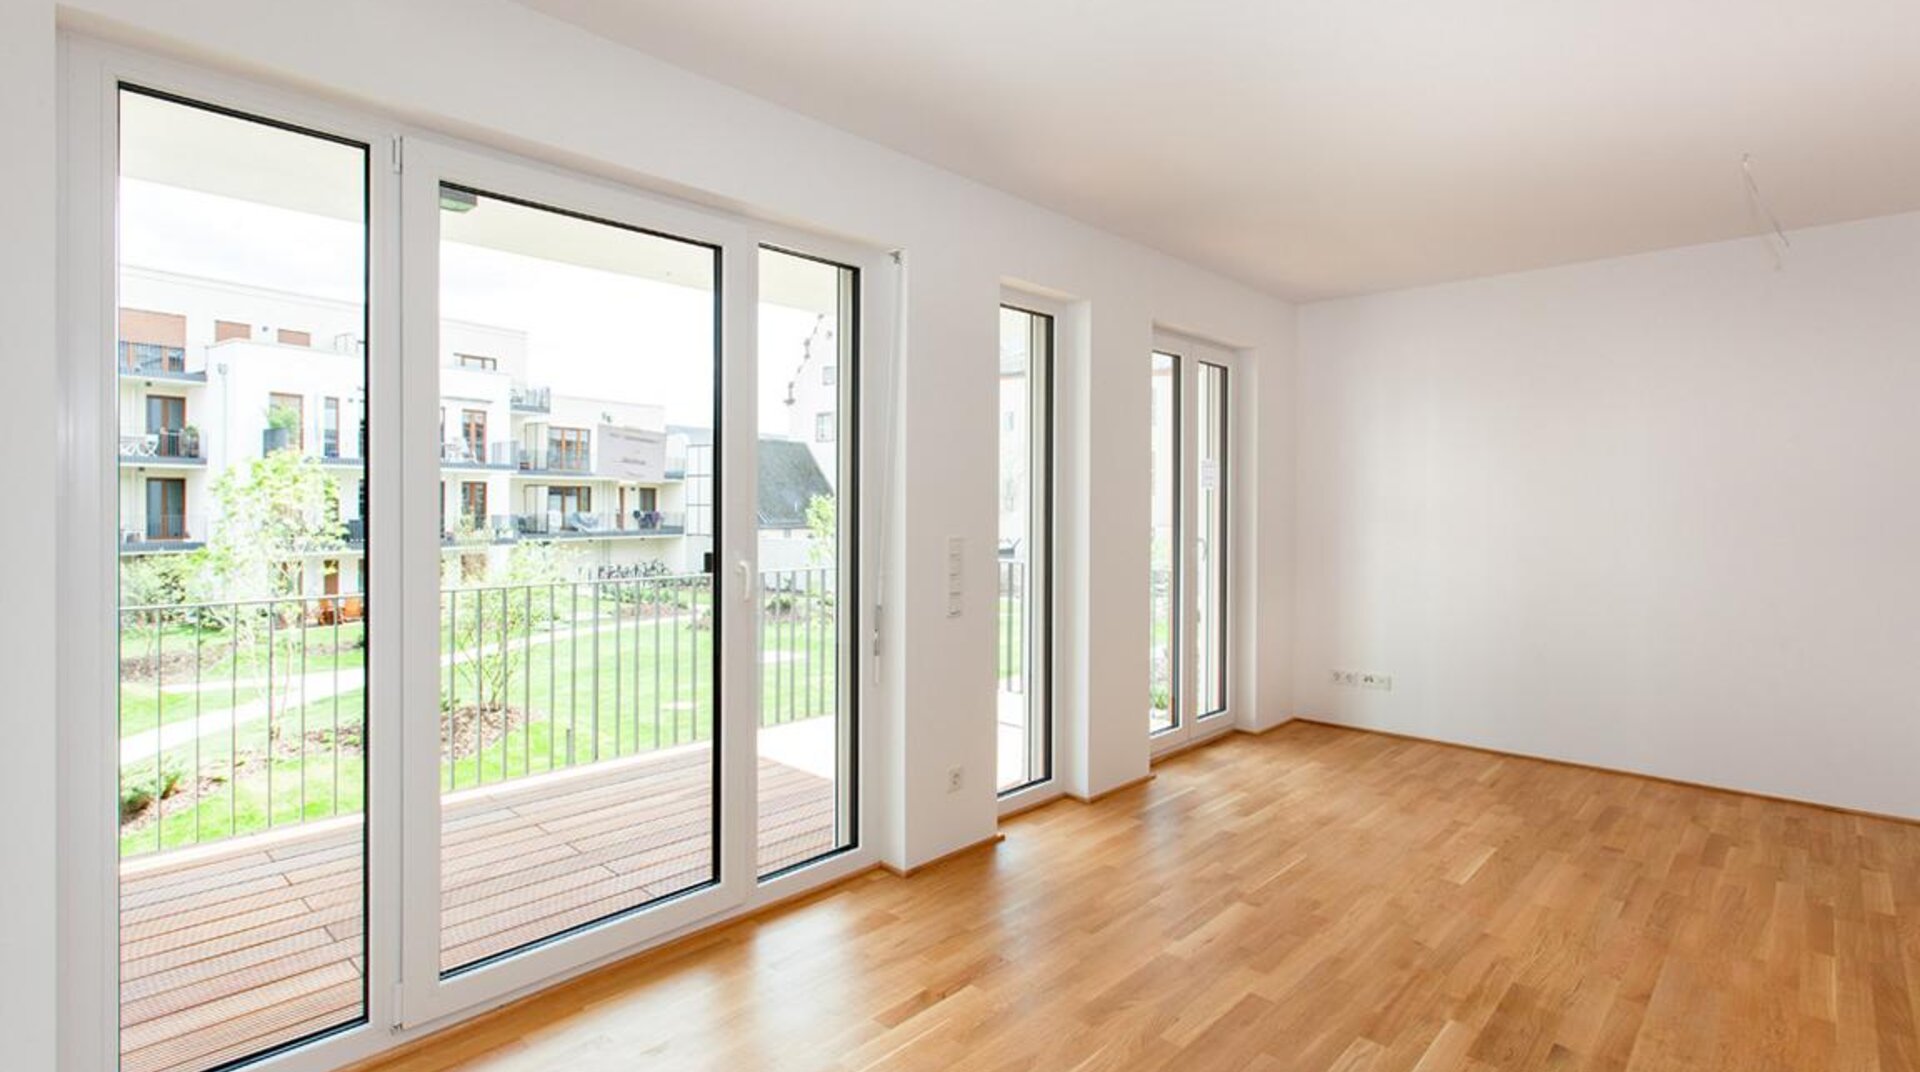 Hoechst_Eigentumswohnungen_Frankfurt, leerer Raum, Parkett, weiße Wände